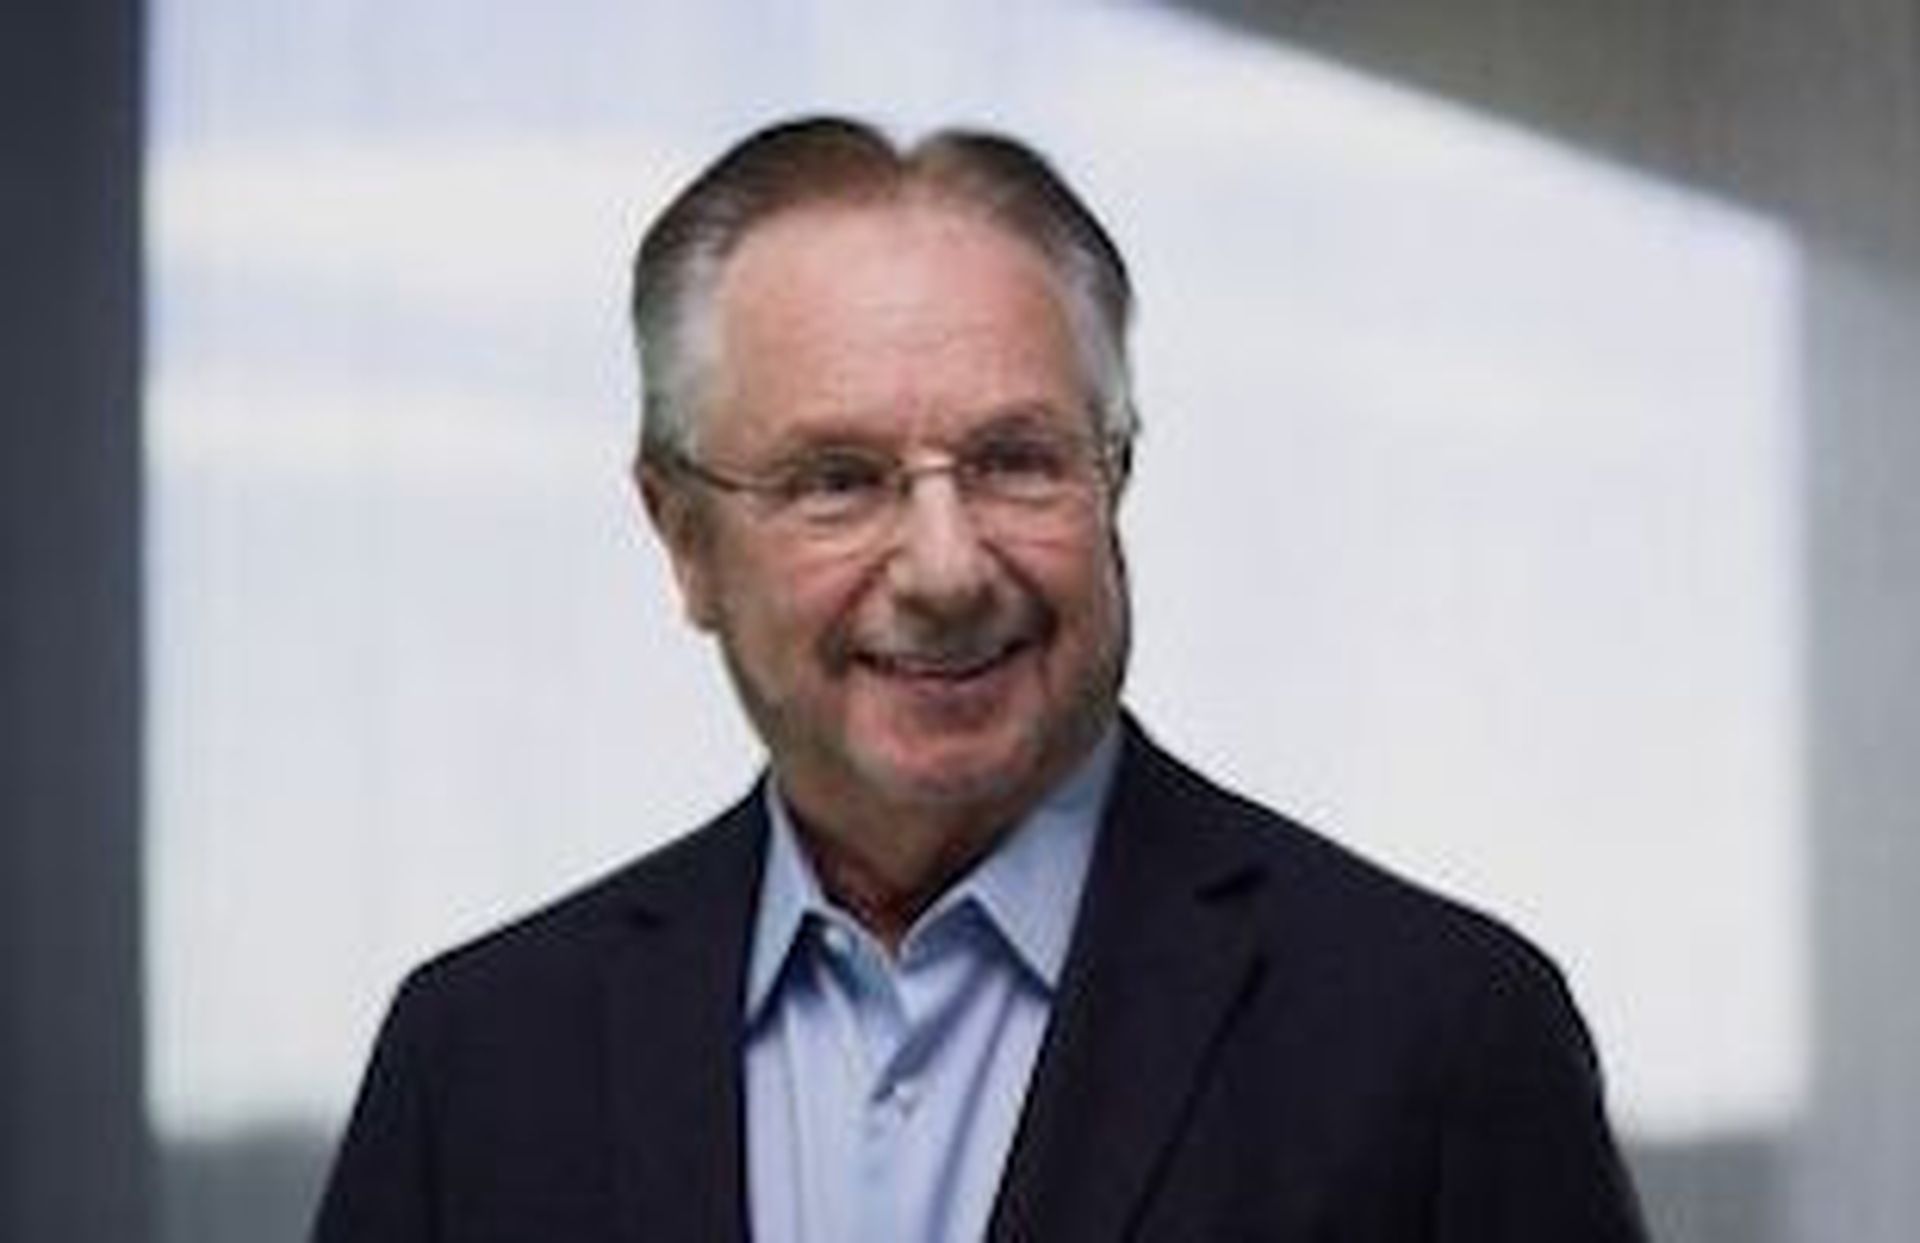 Commvault CEO N. Robert Hammer